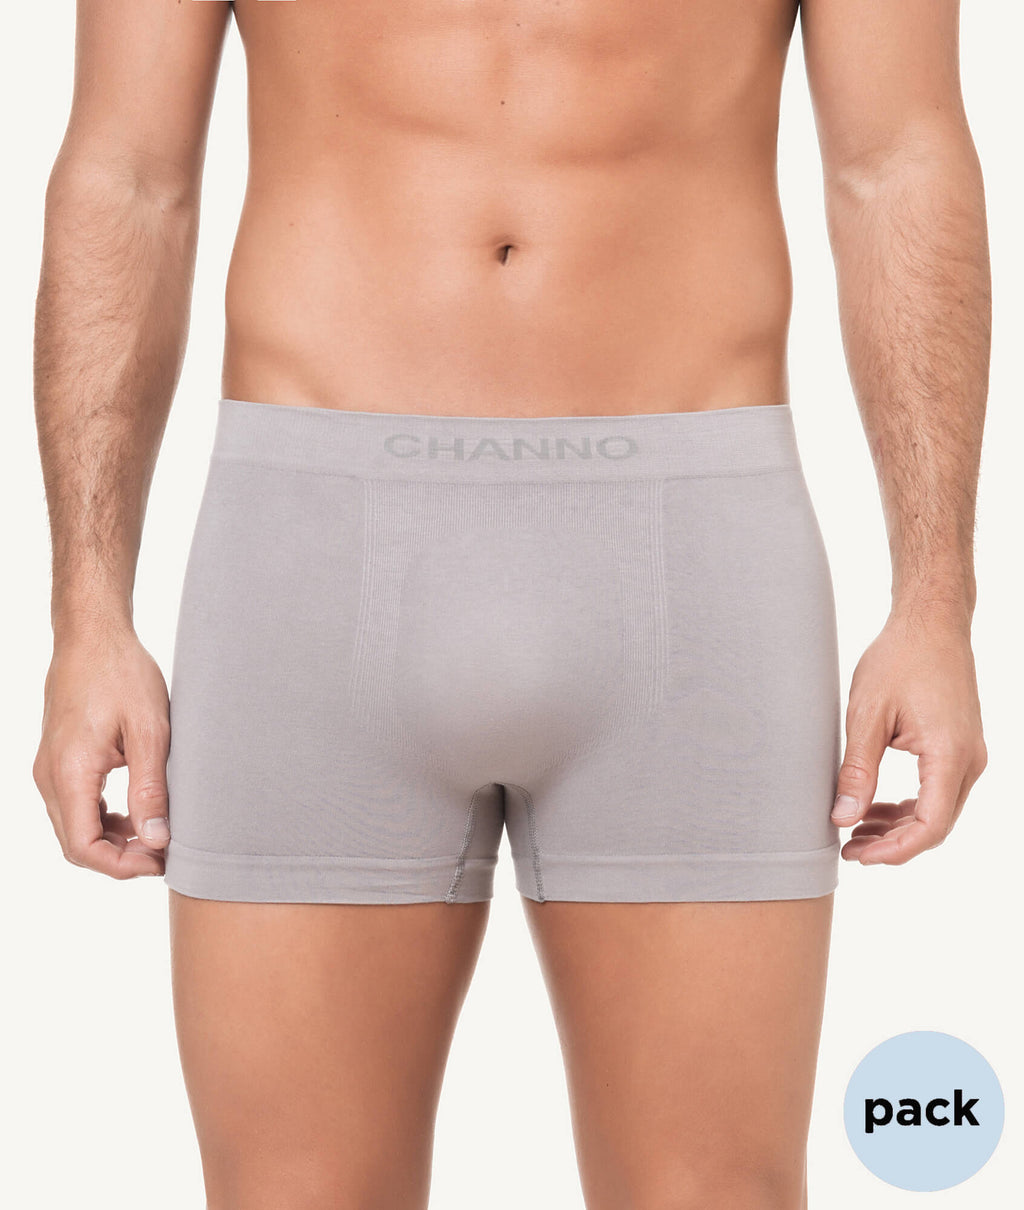 Calzoncillos boxer algodón sin costura color uniforme PACK - CHANNO Man